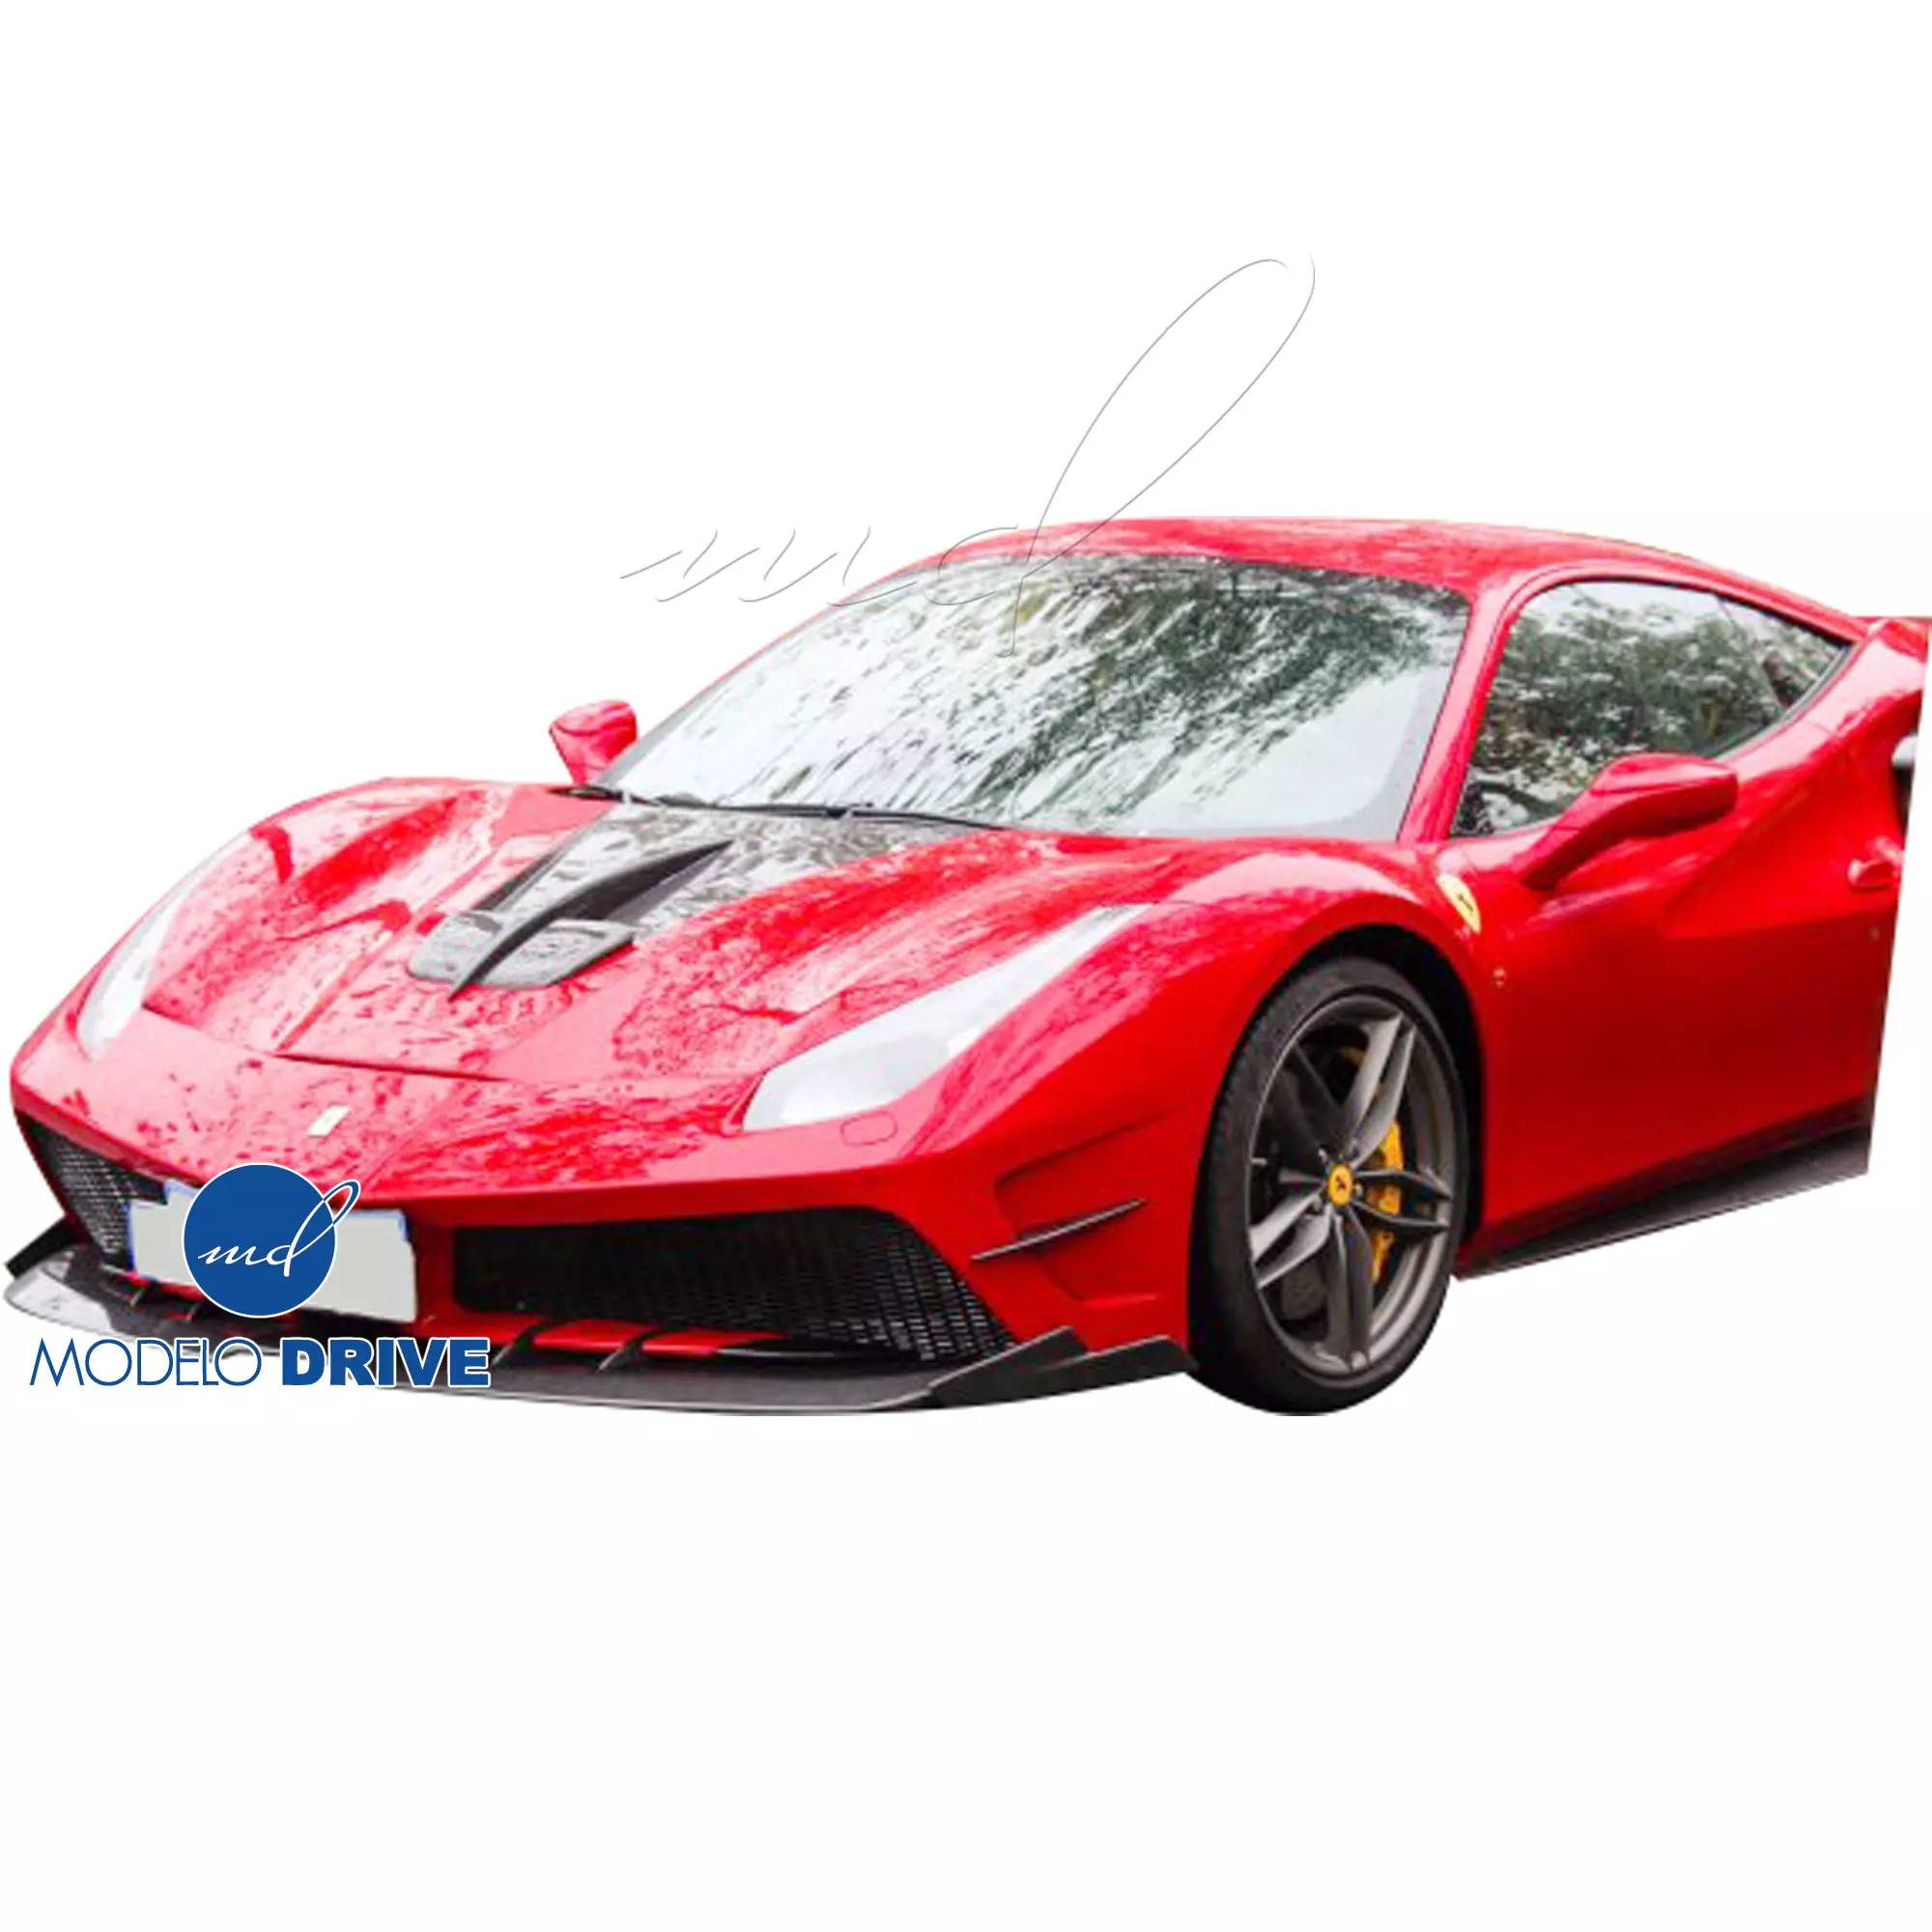 ModeloDrive Partial Carbon Fiber MDES Front Bumper w Splitter > Ferrari 488 GTB F142M 2016-2019 - Image 5